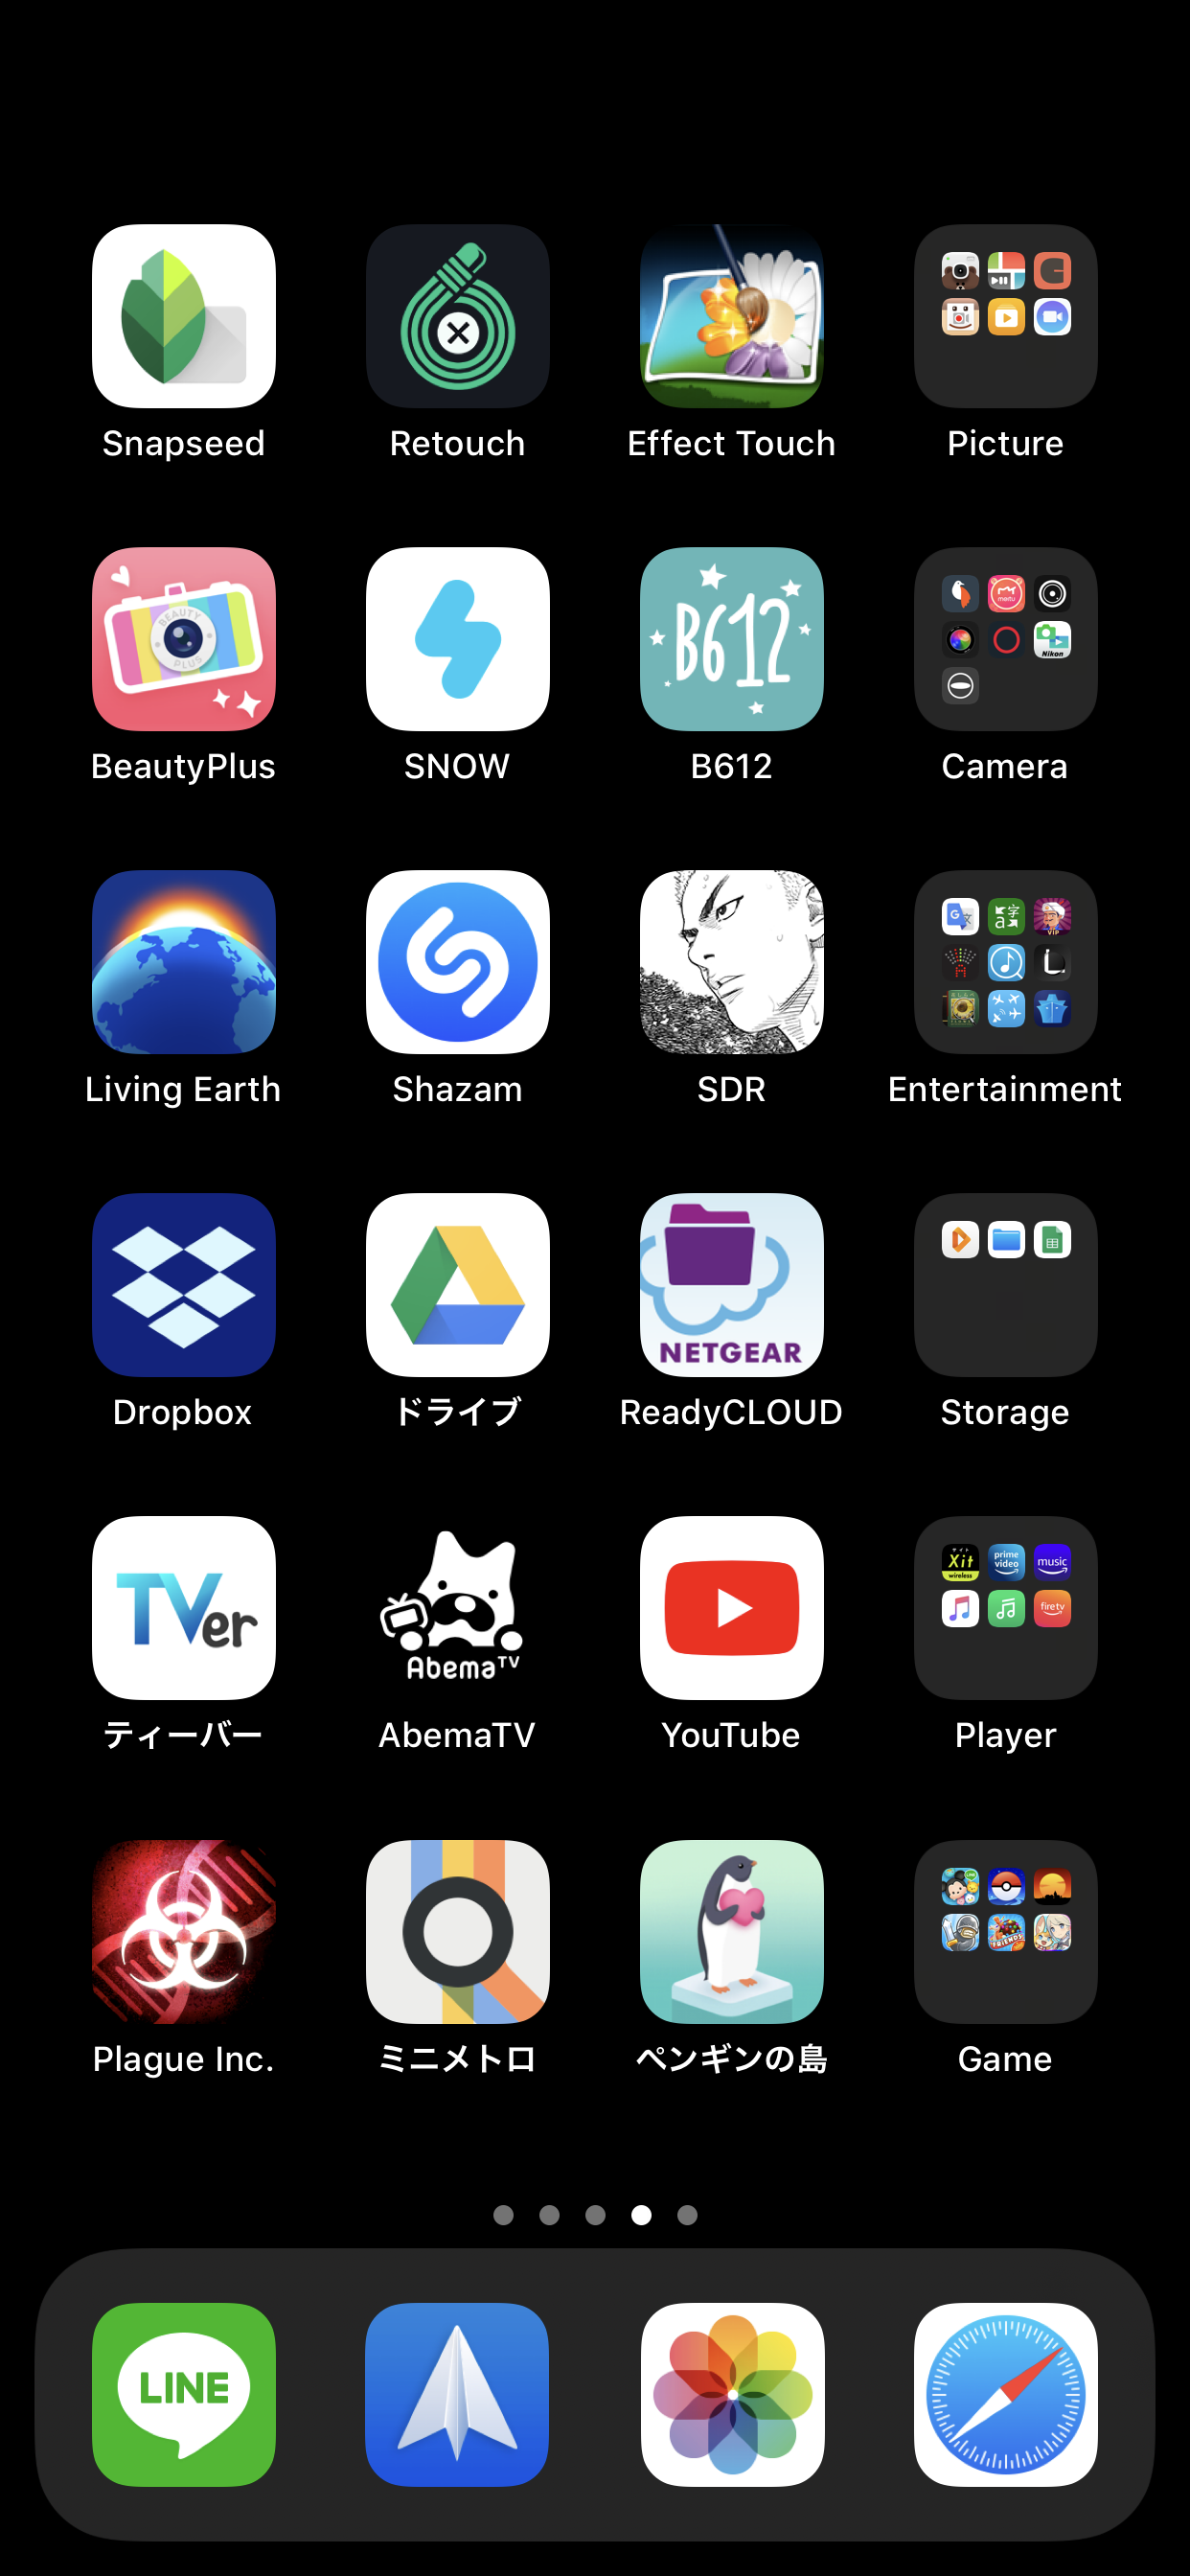 Iphone歴11年 アプリエンジニアのホーム画面晒す 天罰アタル Note